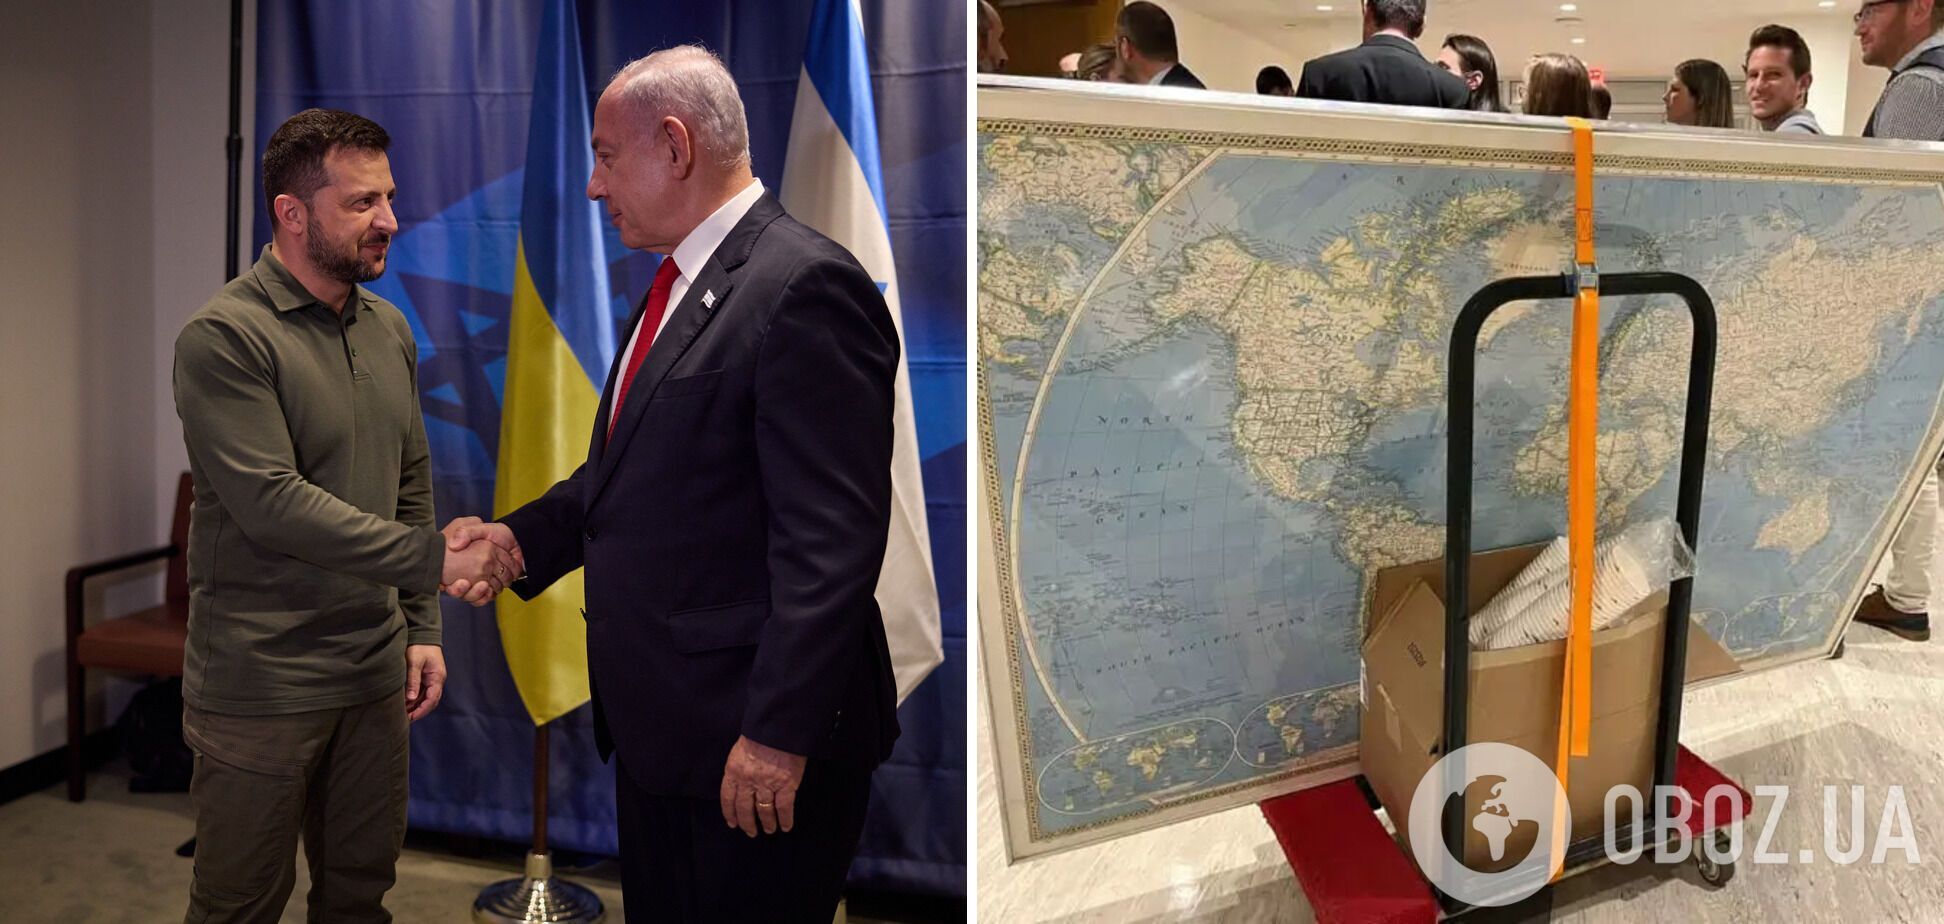 Зеленский провел переговоры с Нетаньяху в Нью-Йорке: всплыли подробности о конфузе с картой. Фото